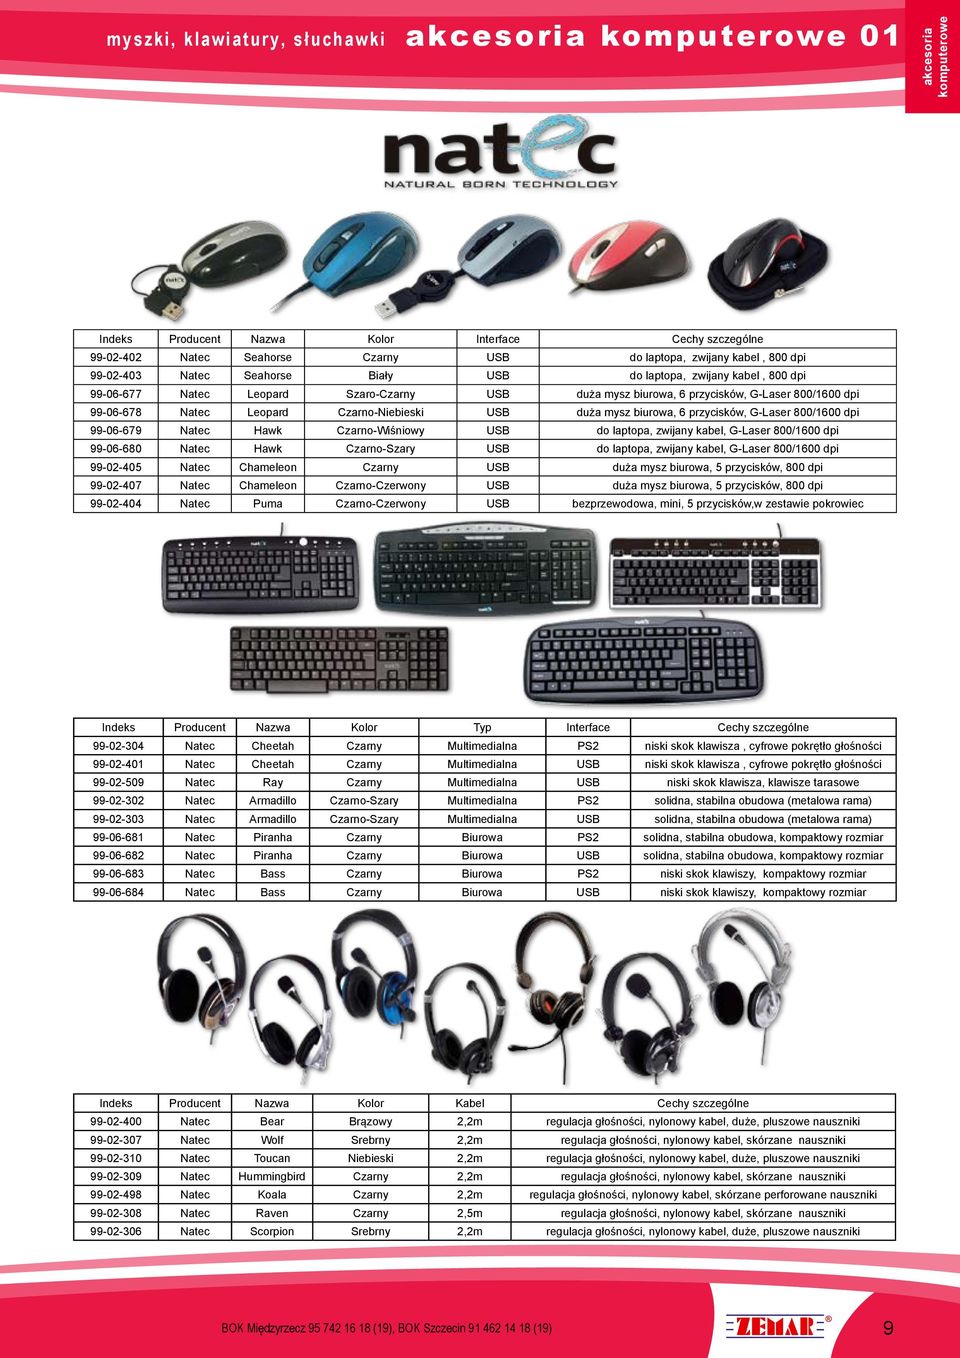 mysz biurowa, 6 przycisków, G-Laser 800/1600 dpi 99-06-679 Natec Hawk Czarno-Wiśniowy USB do laptopa, zwijany kabel, G-Laser 800/1600 dpi 99-06-680 Natec Hawk Czarno-Szary USB do laptopa, zwijany